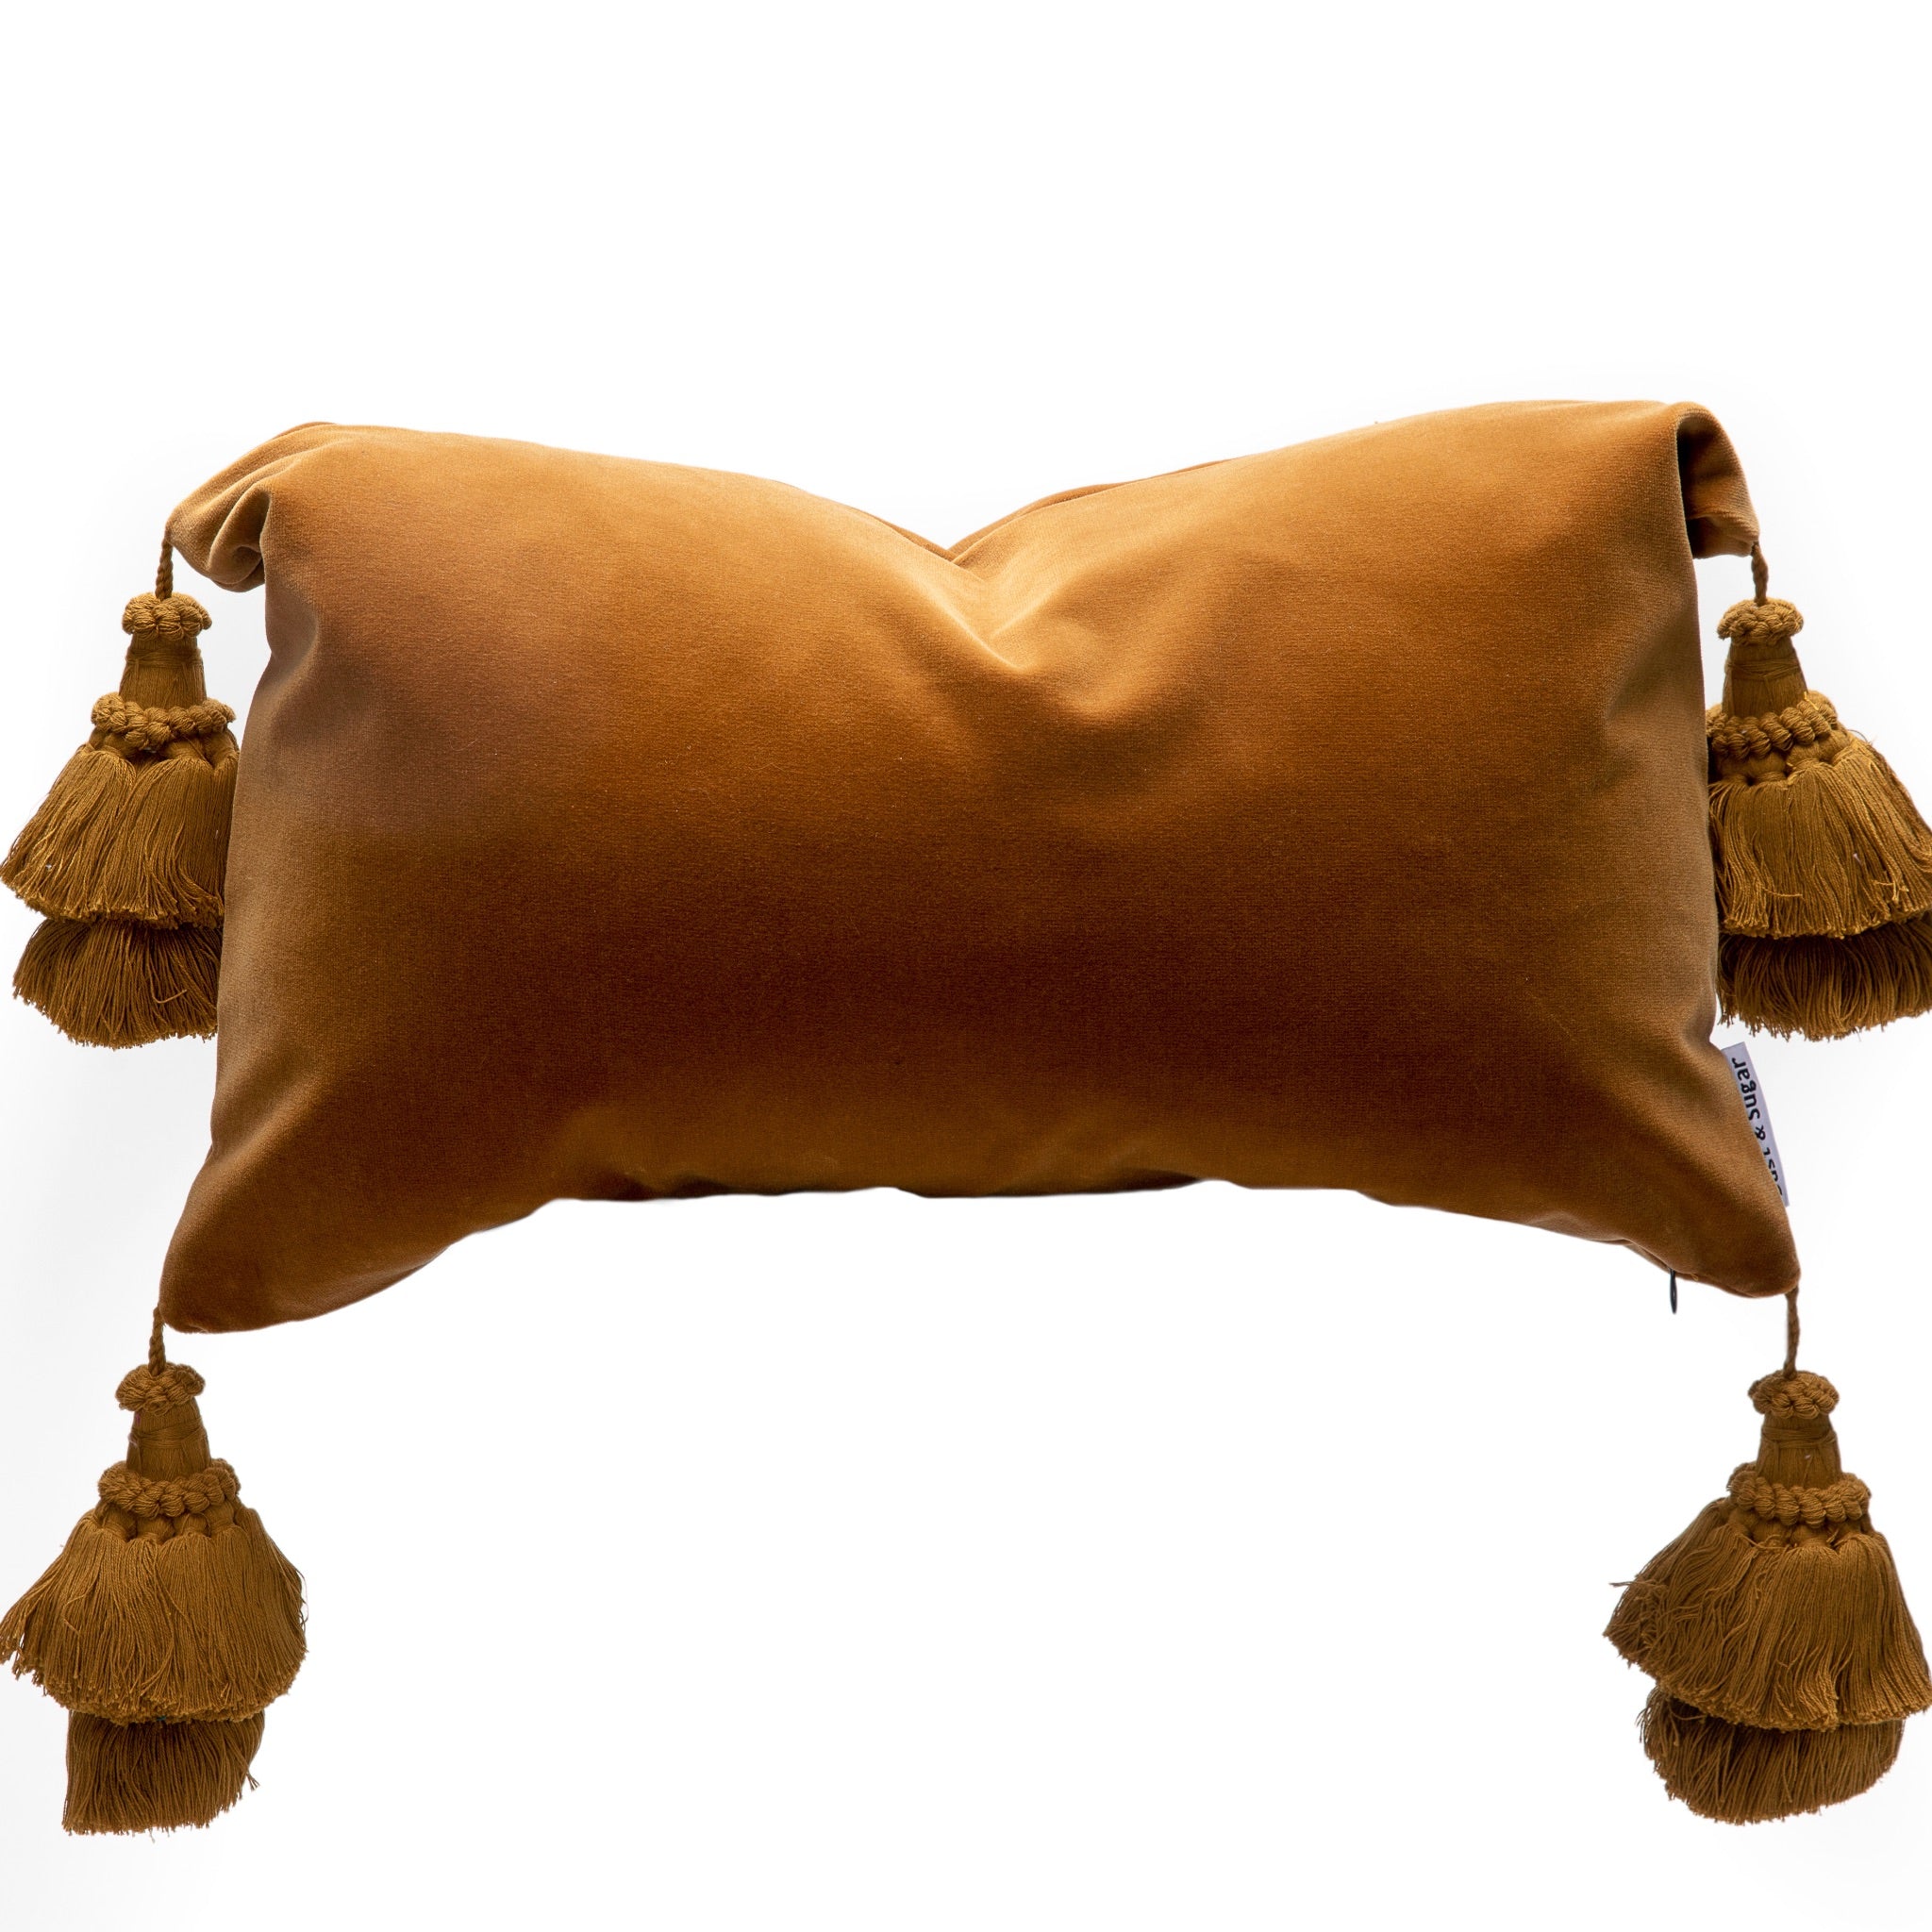 Velvet Pillows With Handmade Tassels